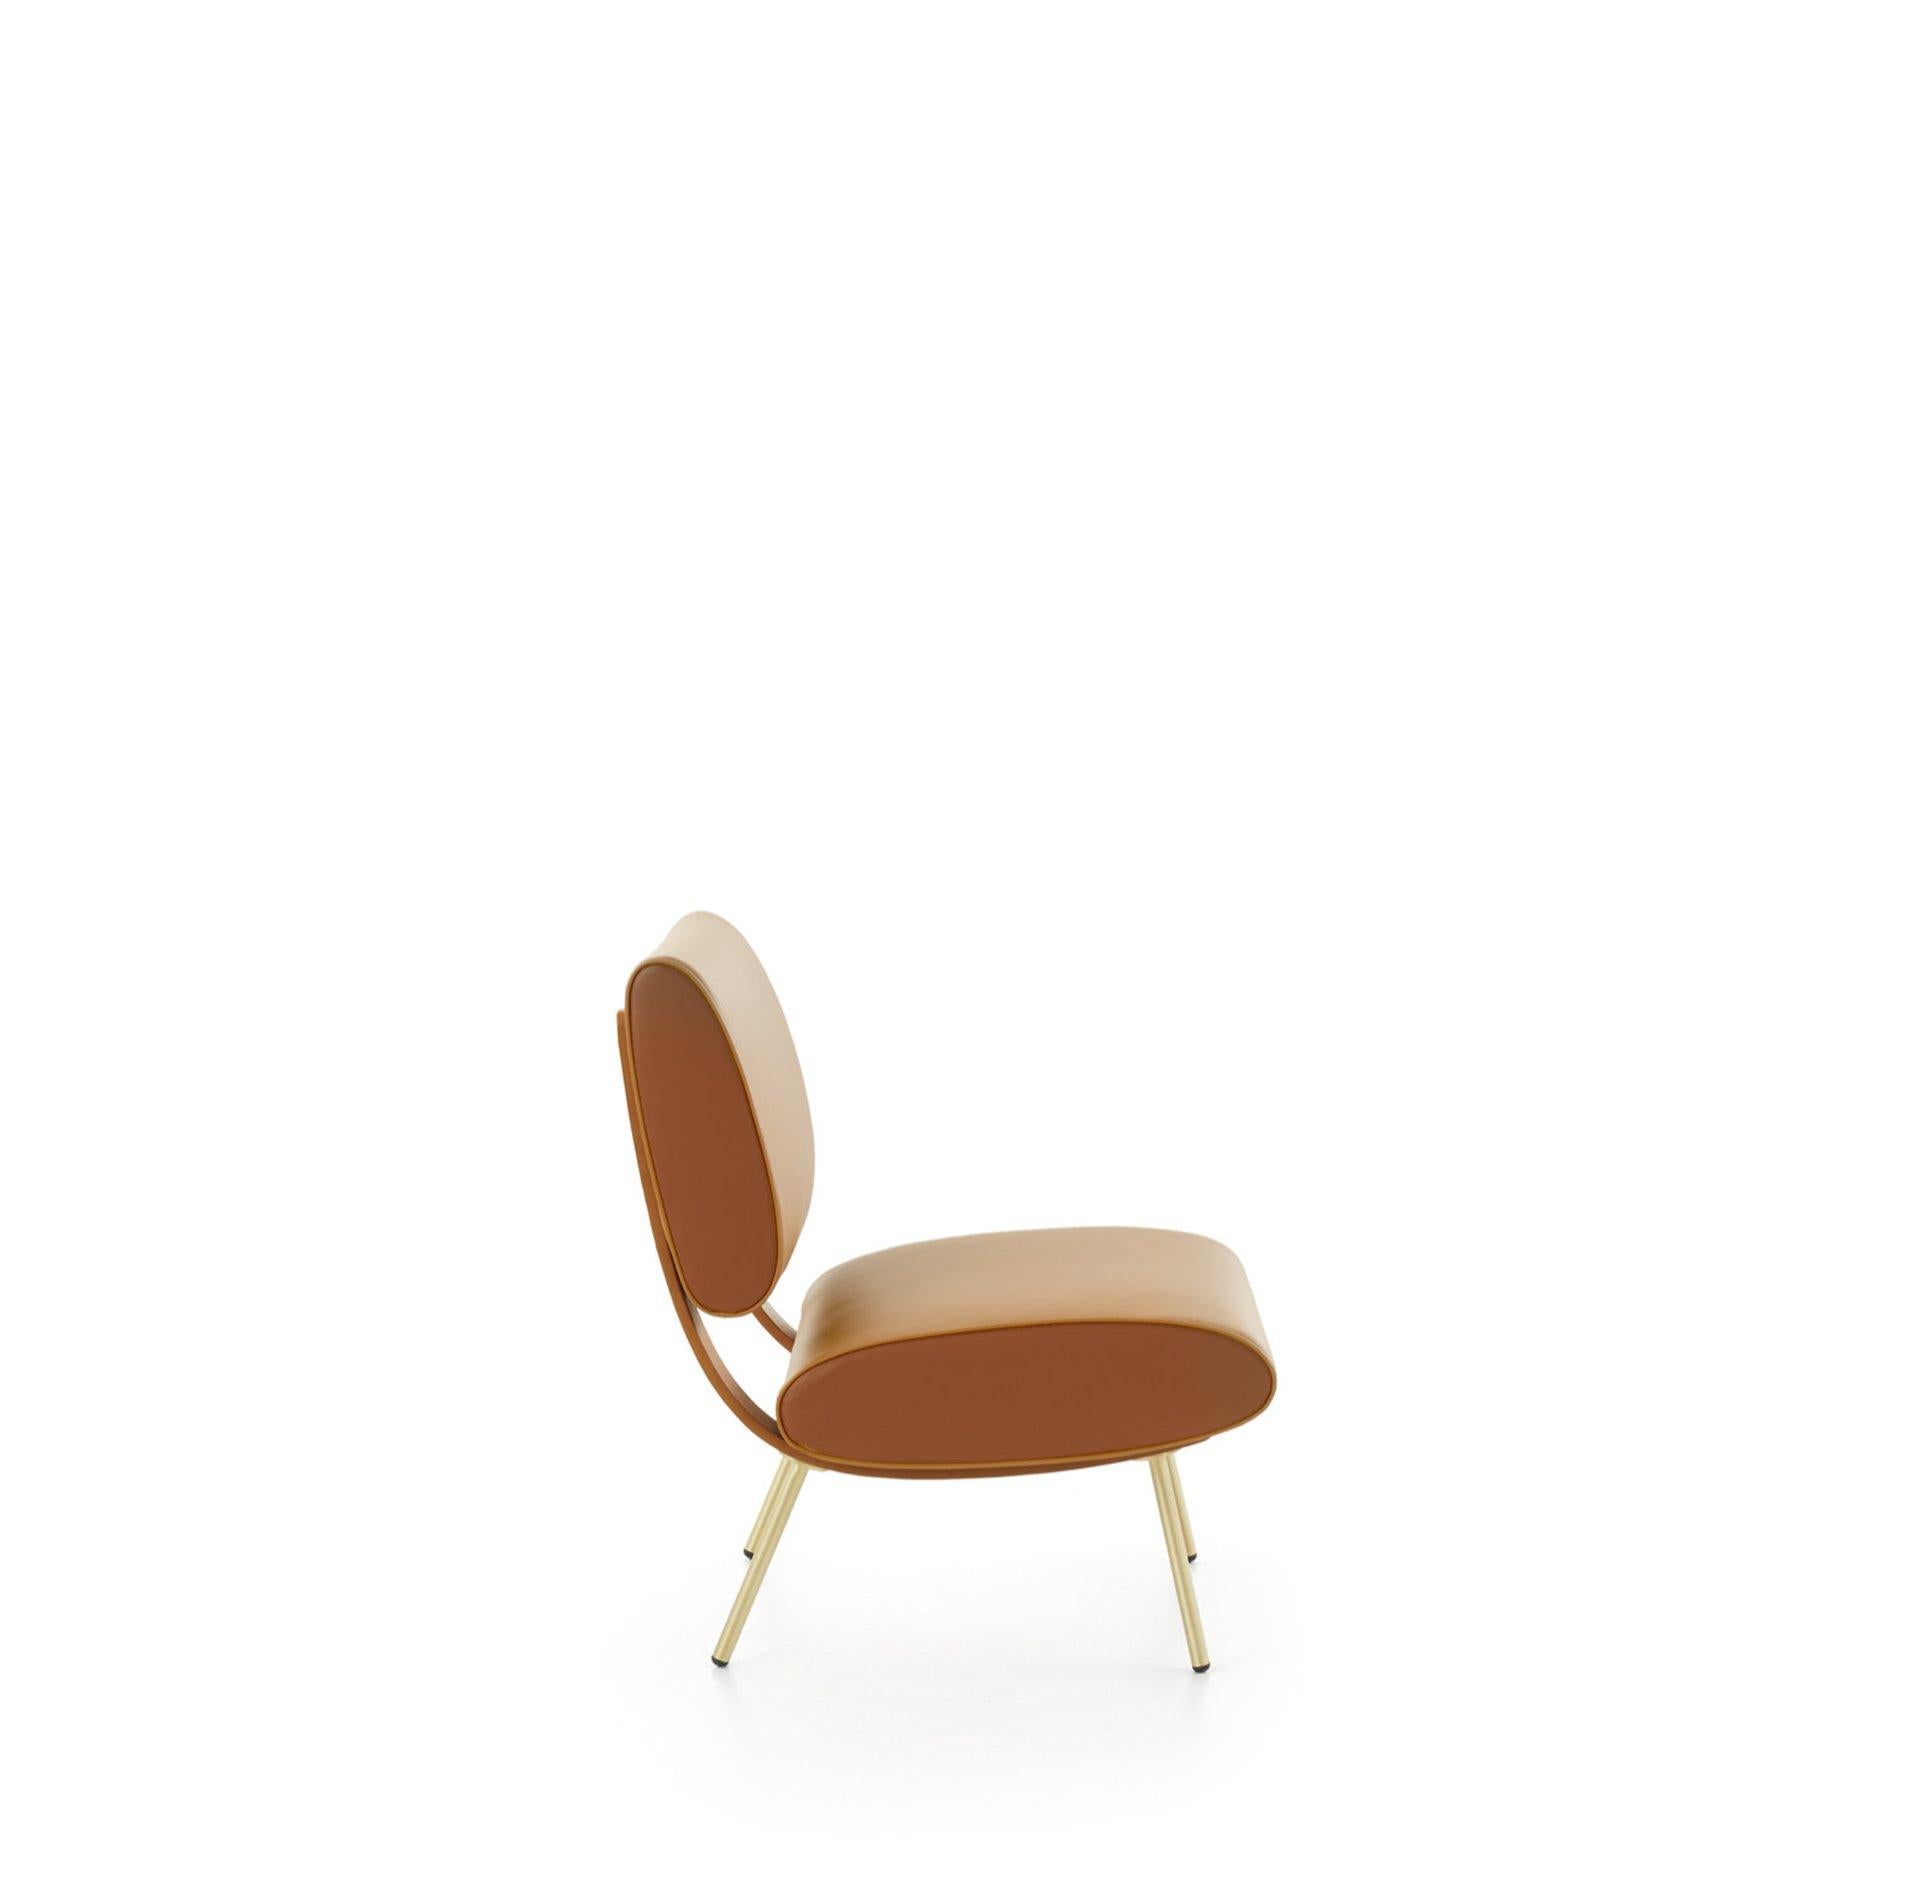 Fauteuil en cuir de Gio Ponti. Fabriqué en Italie exclusivement par Molteni&C.

La fin de la Seconde Guerre mondiale a marqué le début d'une ère de créativité, et il en va de même pour le design des meubles. Cette chaise arrondie rappelle sa